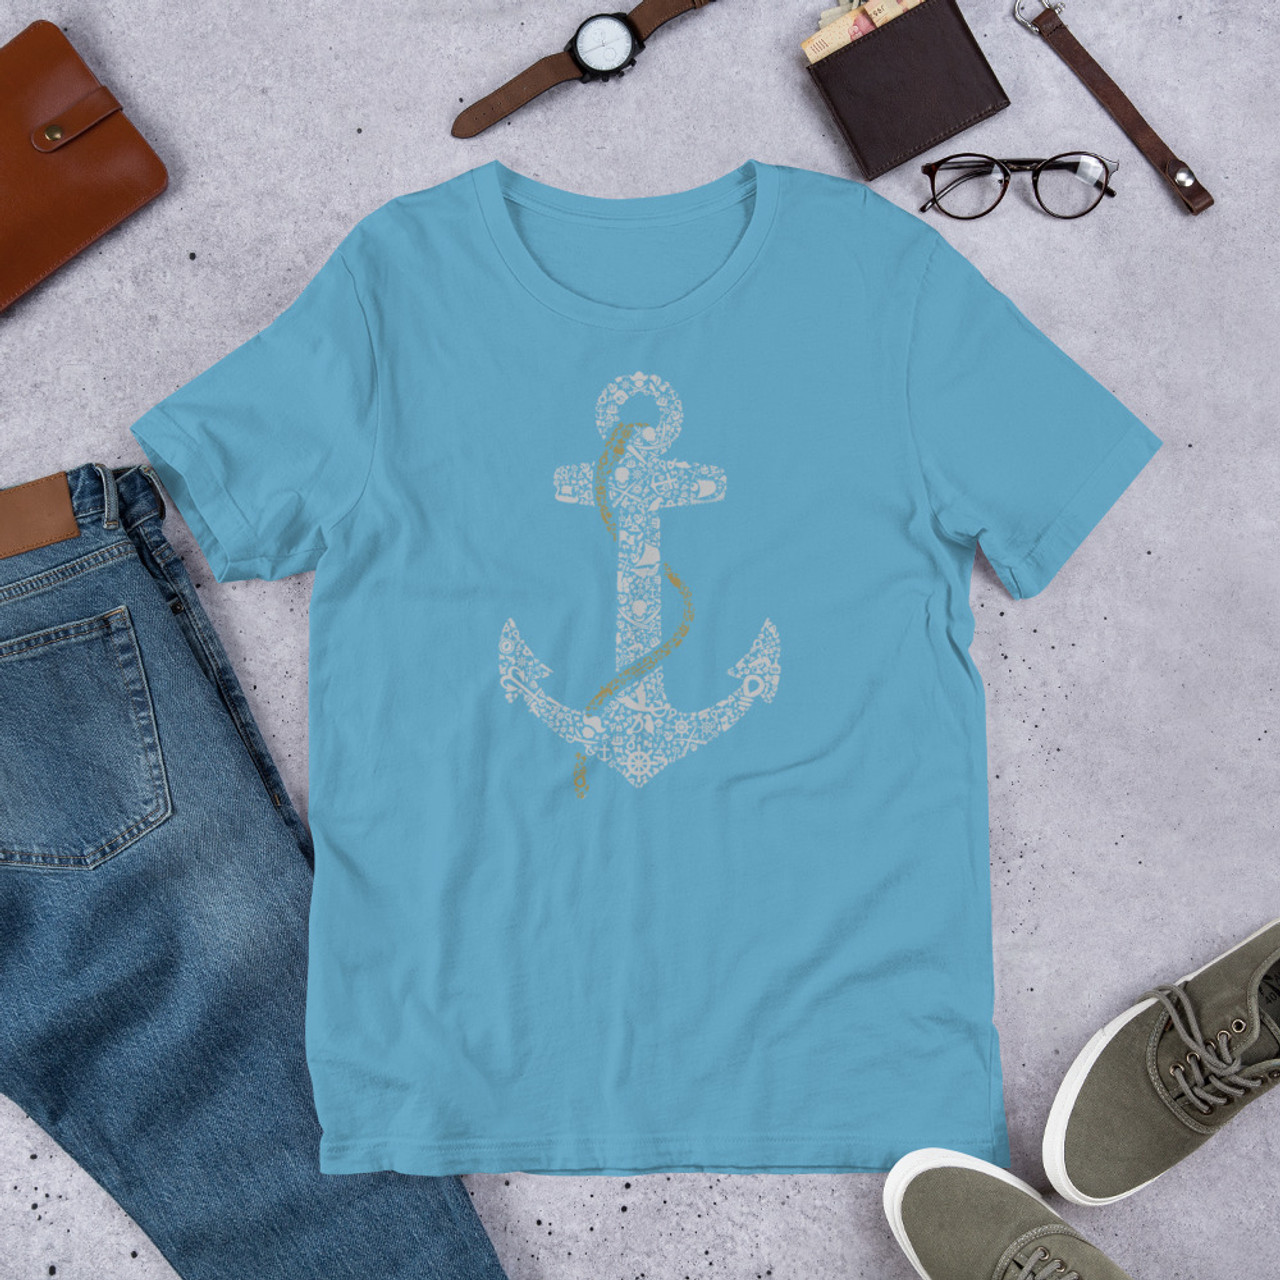 Ocean Blue T-Shirt - Bella + Canvas 3001 Anchor